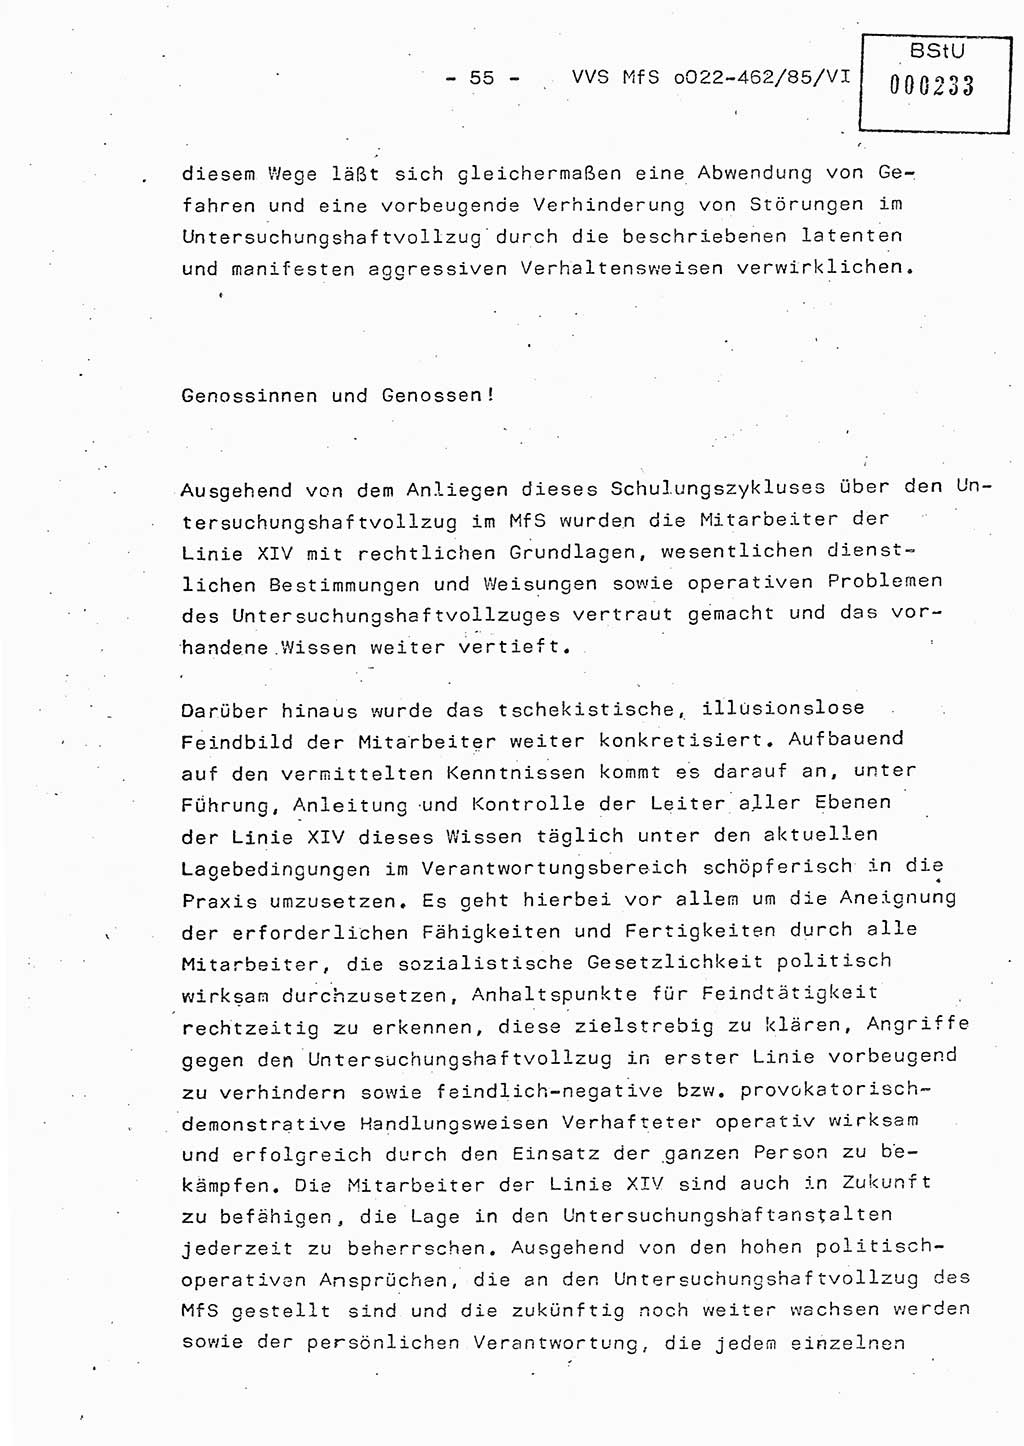 Der Untersuchungshaftvollzug im MfS, Schulungsmaterial Teil Ⅵ, Ministerium für Staatssicherheit [Deutsche Demokratische Republik (DDR)], Abteilung (Abt.) ⅩⅣ, Vertrauliche Verschlußsache (VVS) o022-462/85/Ⅵ, Berlin 1985, Seite 55 (Sch.-Mat. Ⅵ MfS DDR Abt. ⅩⅣ VVS o022-462/85/Ⅵ 1985, S. 55)